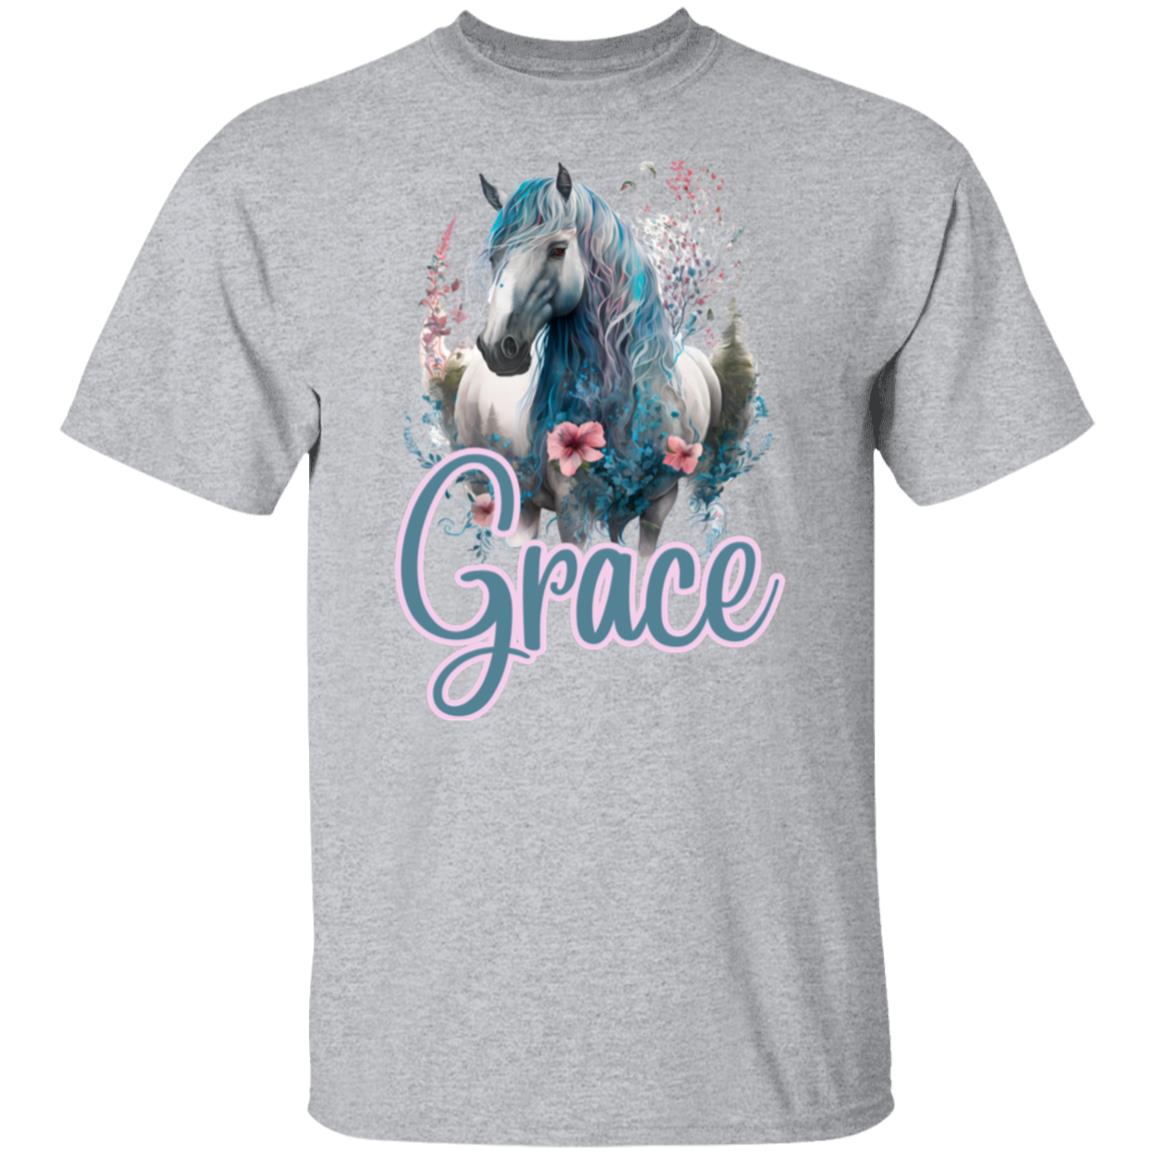 Grace Unisex T-Shirt For Horse Lovers